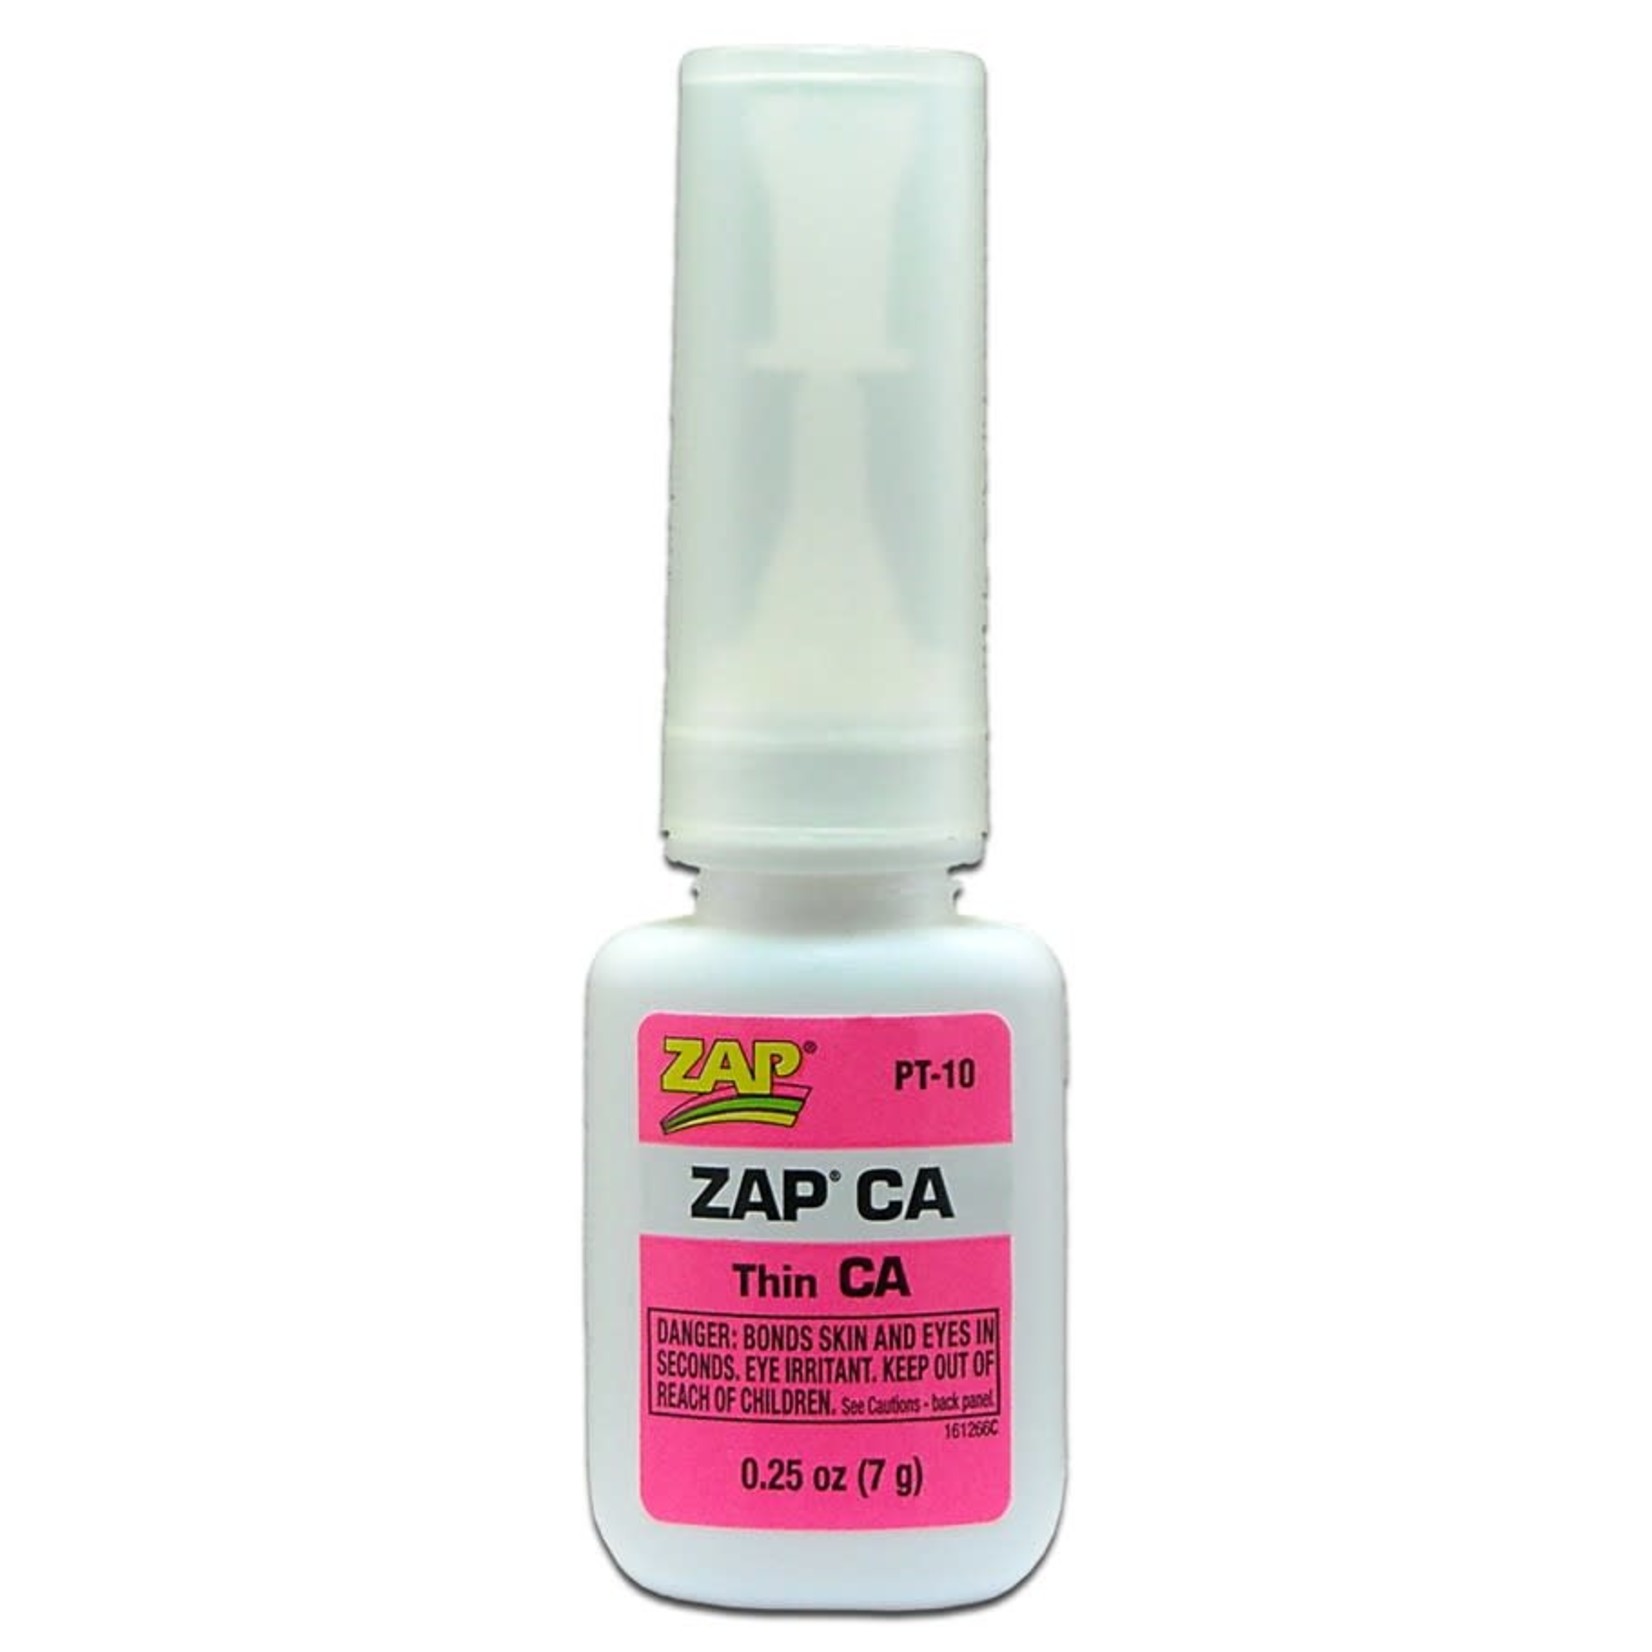 Zap Glue Zap-a-gap Thin CA Super Glue 1/4 oz